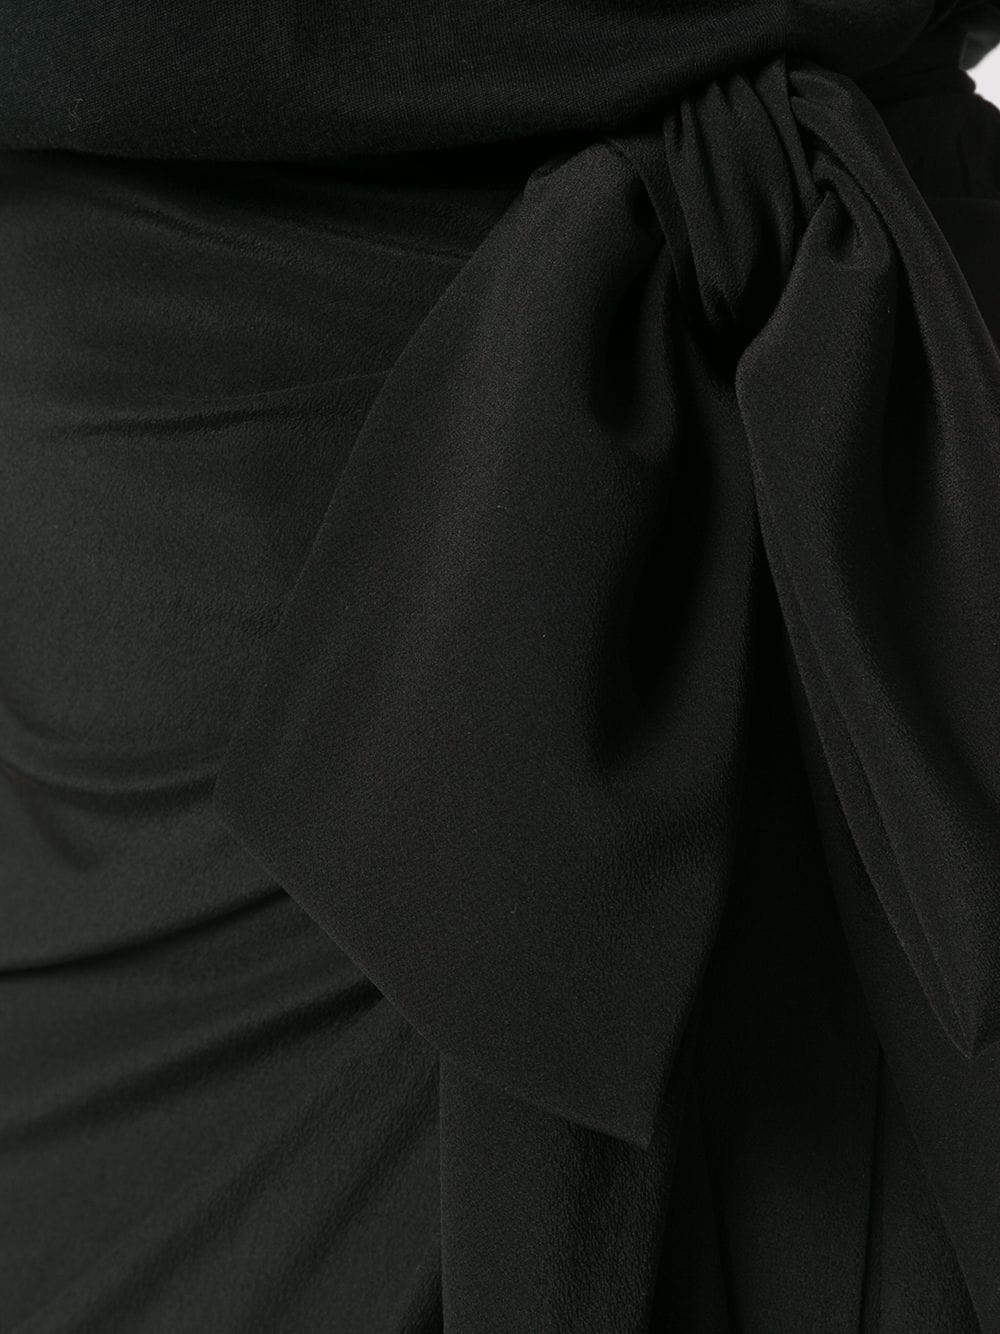 фото Saint laurent асимметричная драпированная юбка